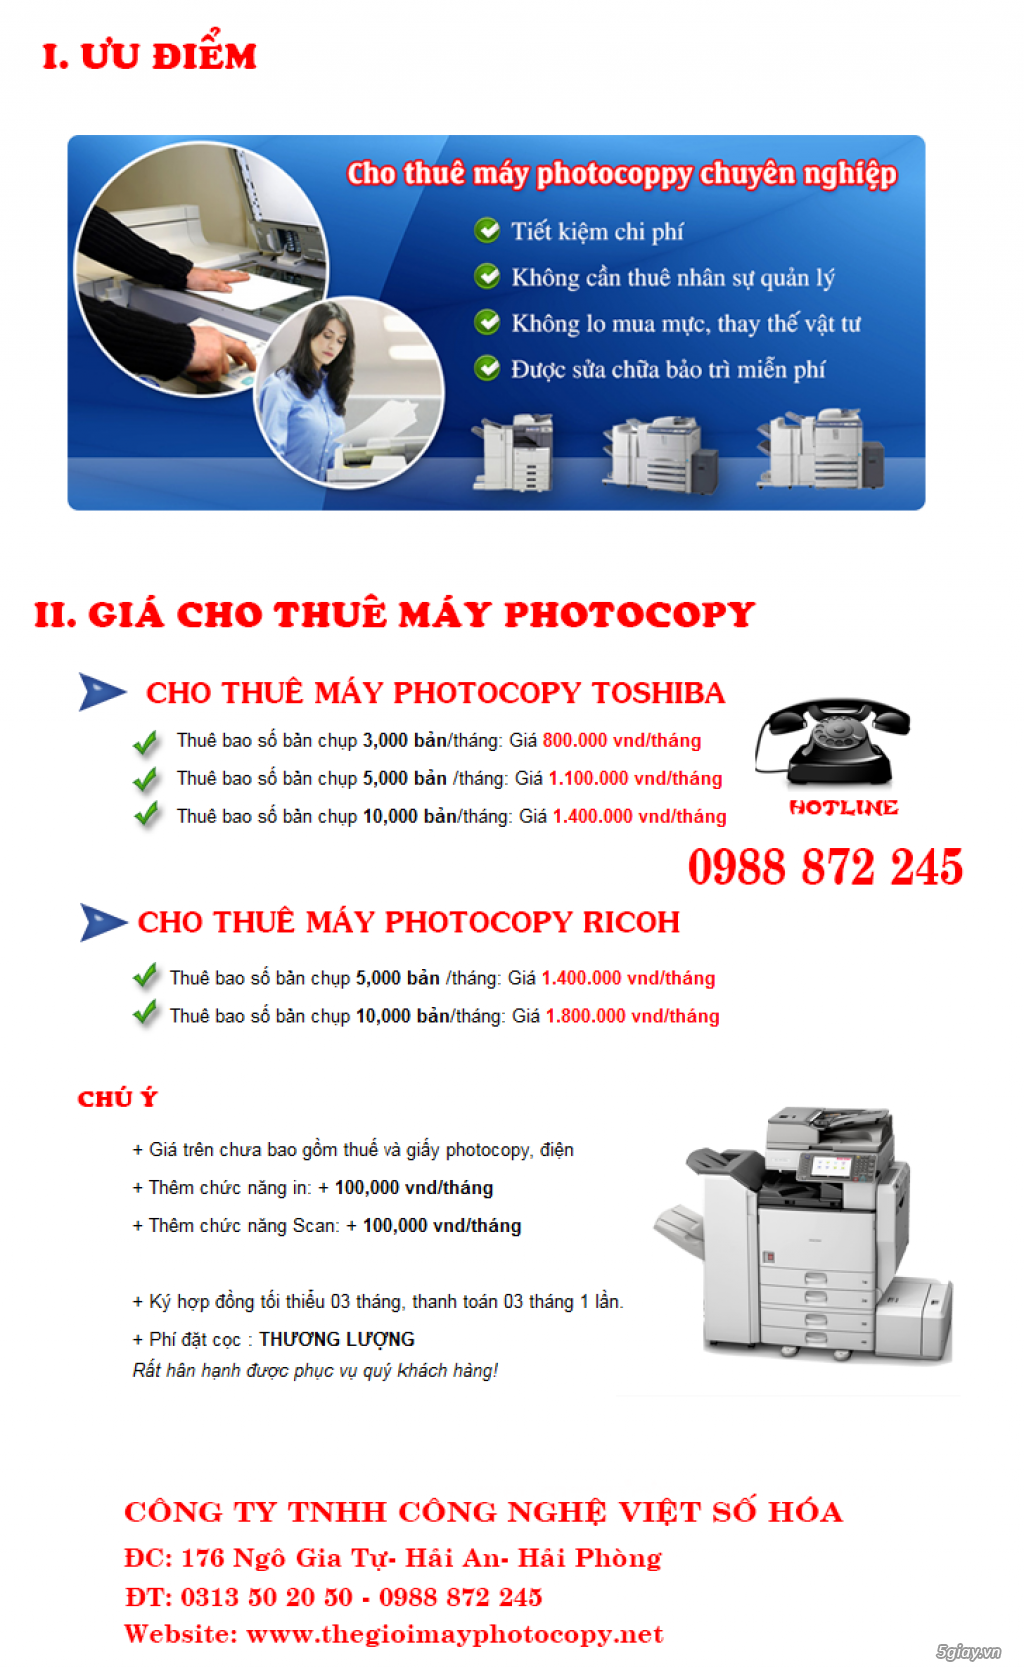 Cho thuê máy photocopy tại Quảng Ninh Giá rẻ